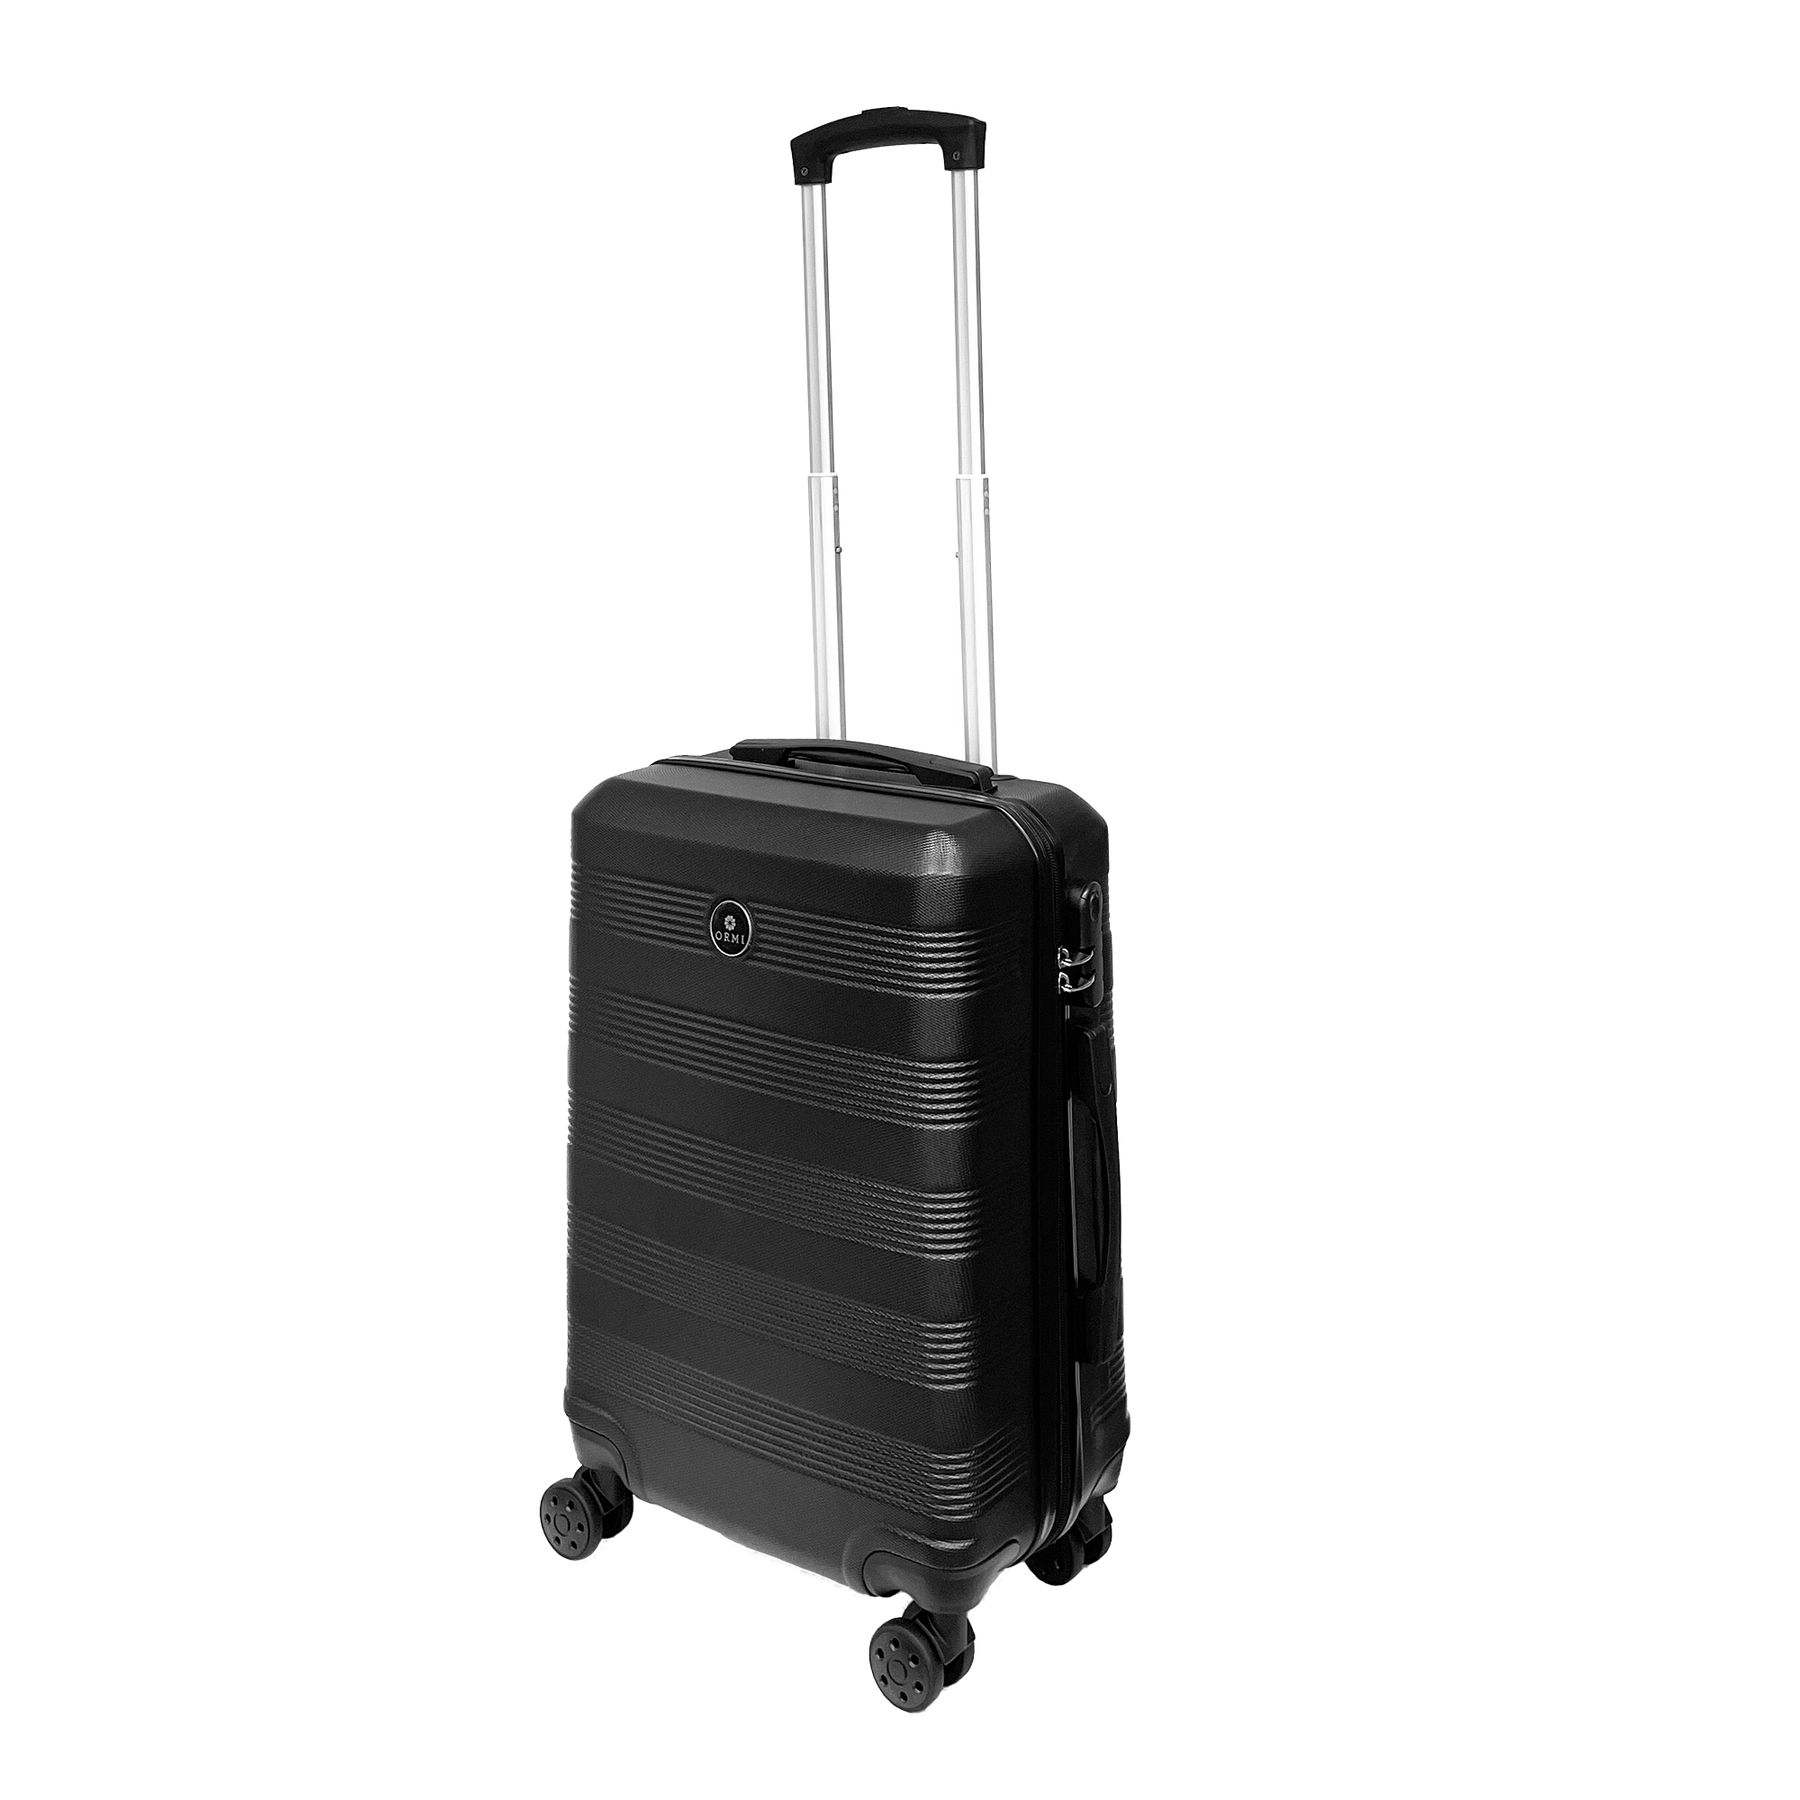 Nagy durva poggyász merev poggyász 55x37x22cm ultrafény az ABS -ben - tartsa meg a poggyászát